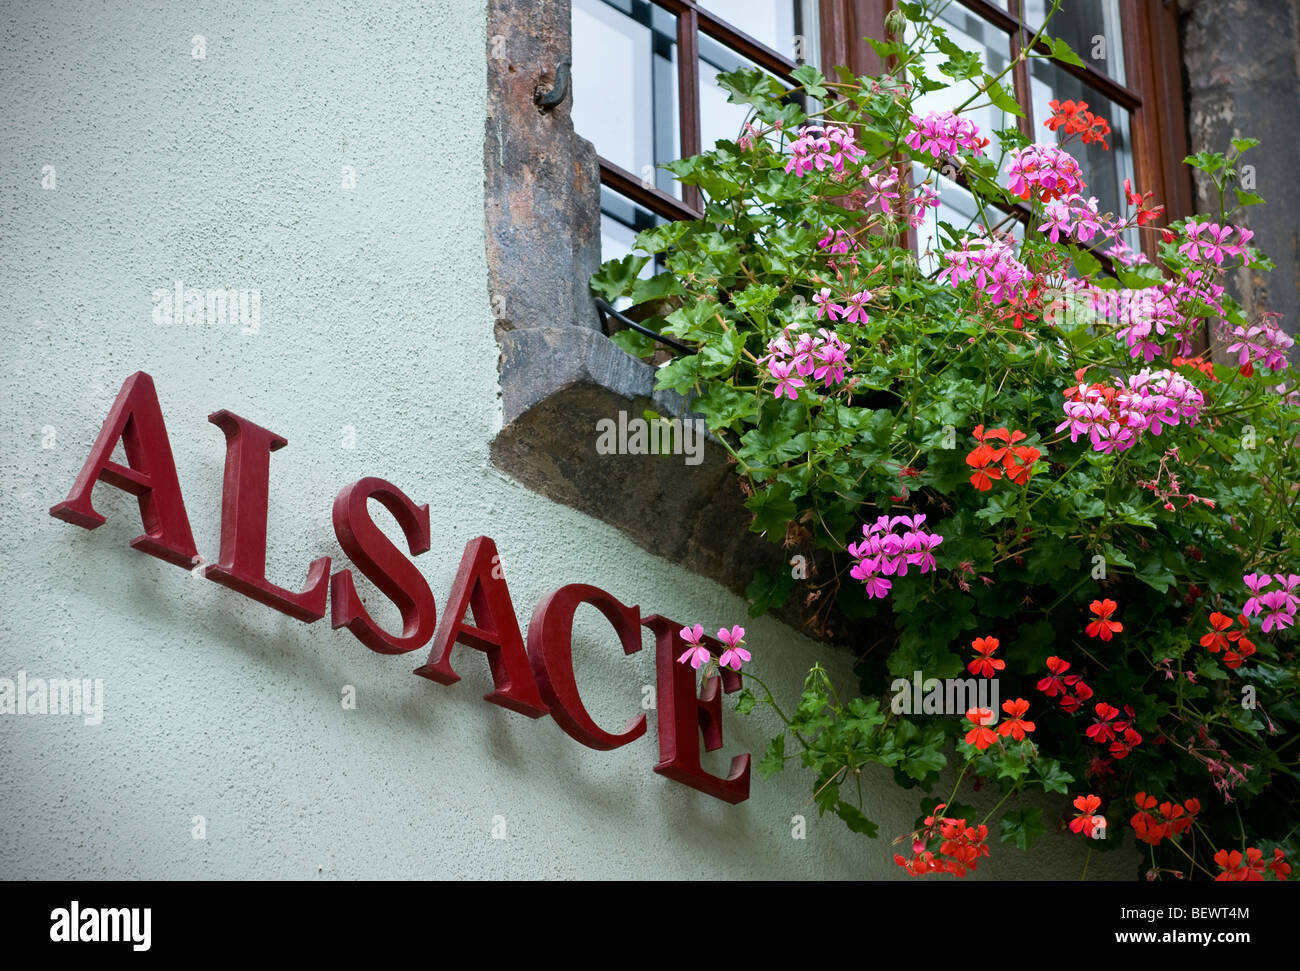 Alsazia segno generico di fiori tipici motivi floreali colorati window box al di fuori della cantina con "Alsace" segno Alsace Francia Foto Stock